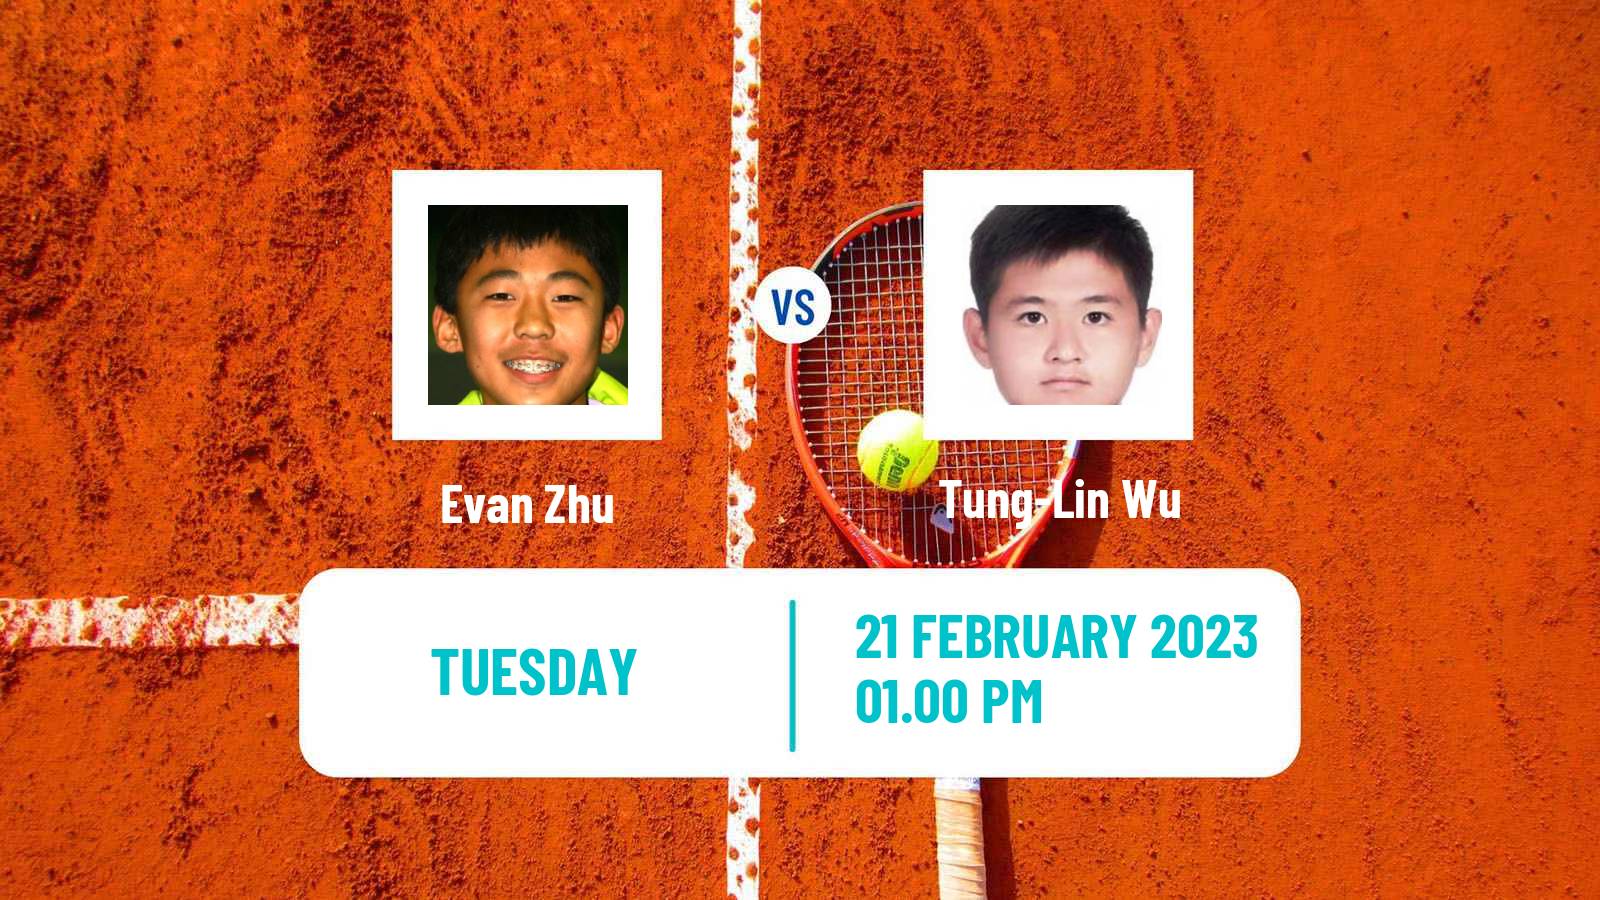 Tennis ATP Challenger Evan Zhu - Tung-Lin Wu